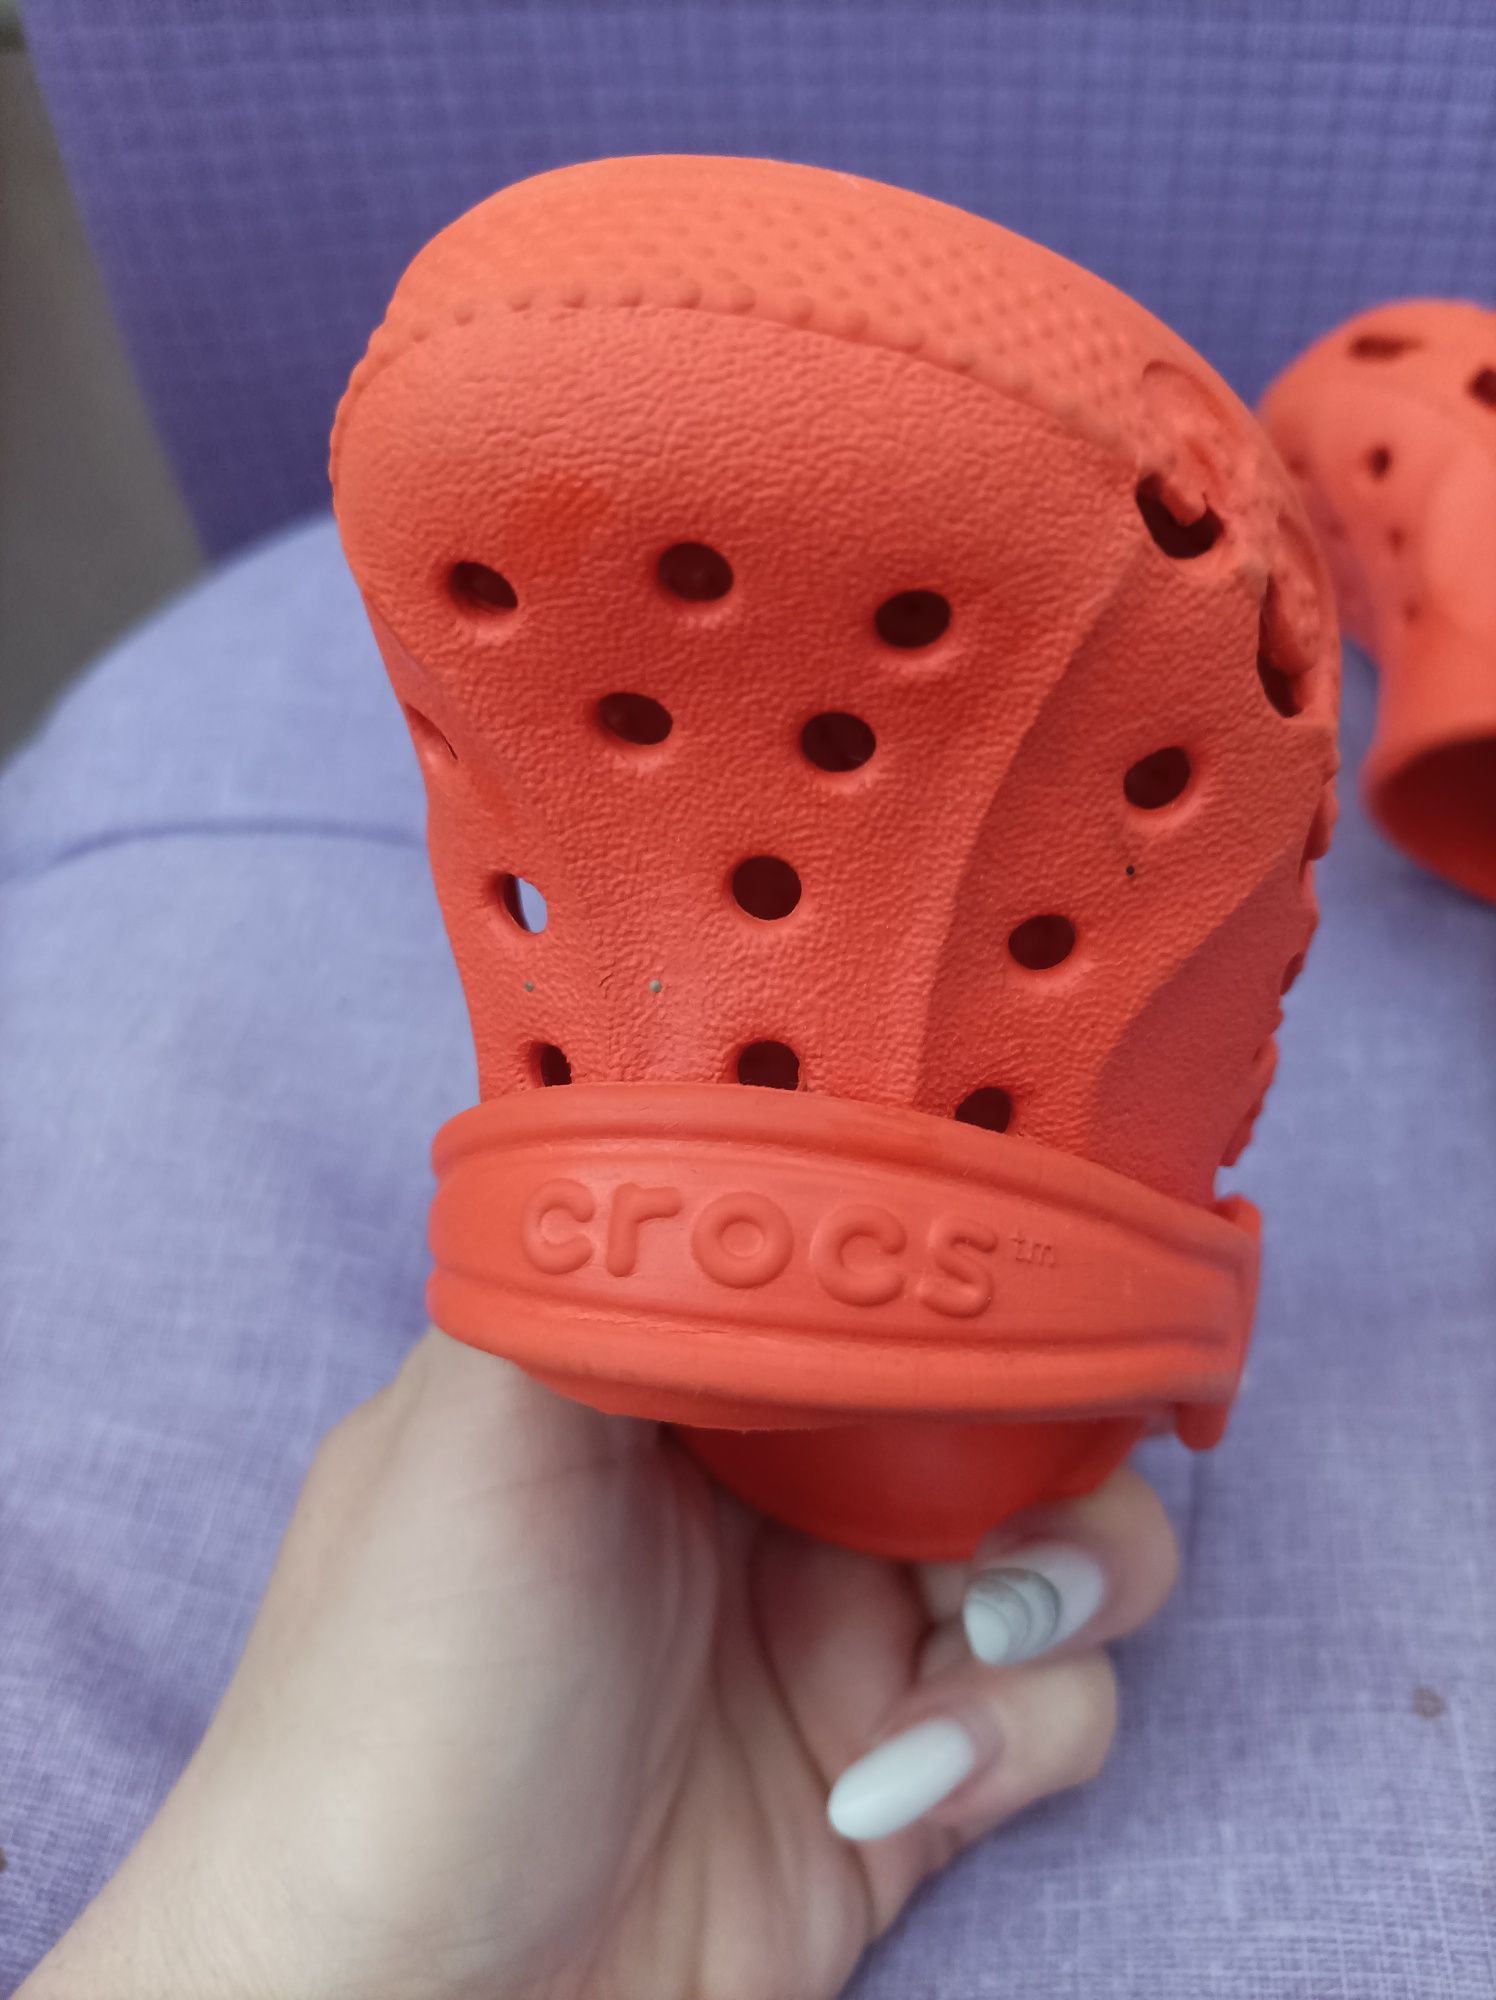 Кроксы Crocs детские